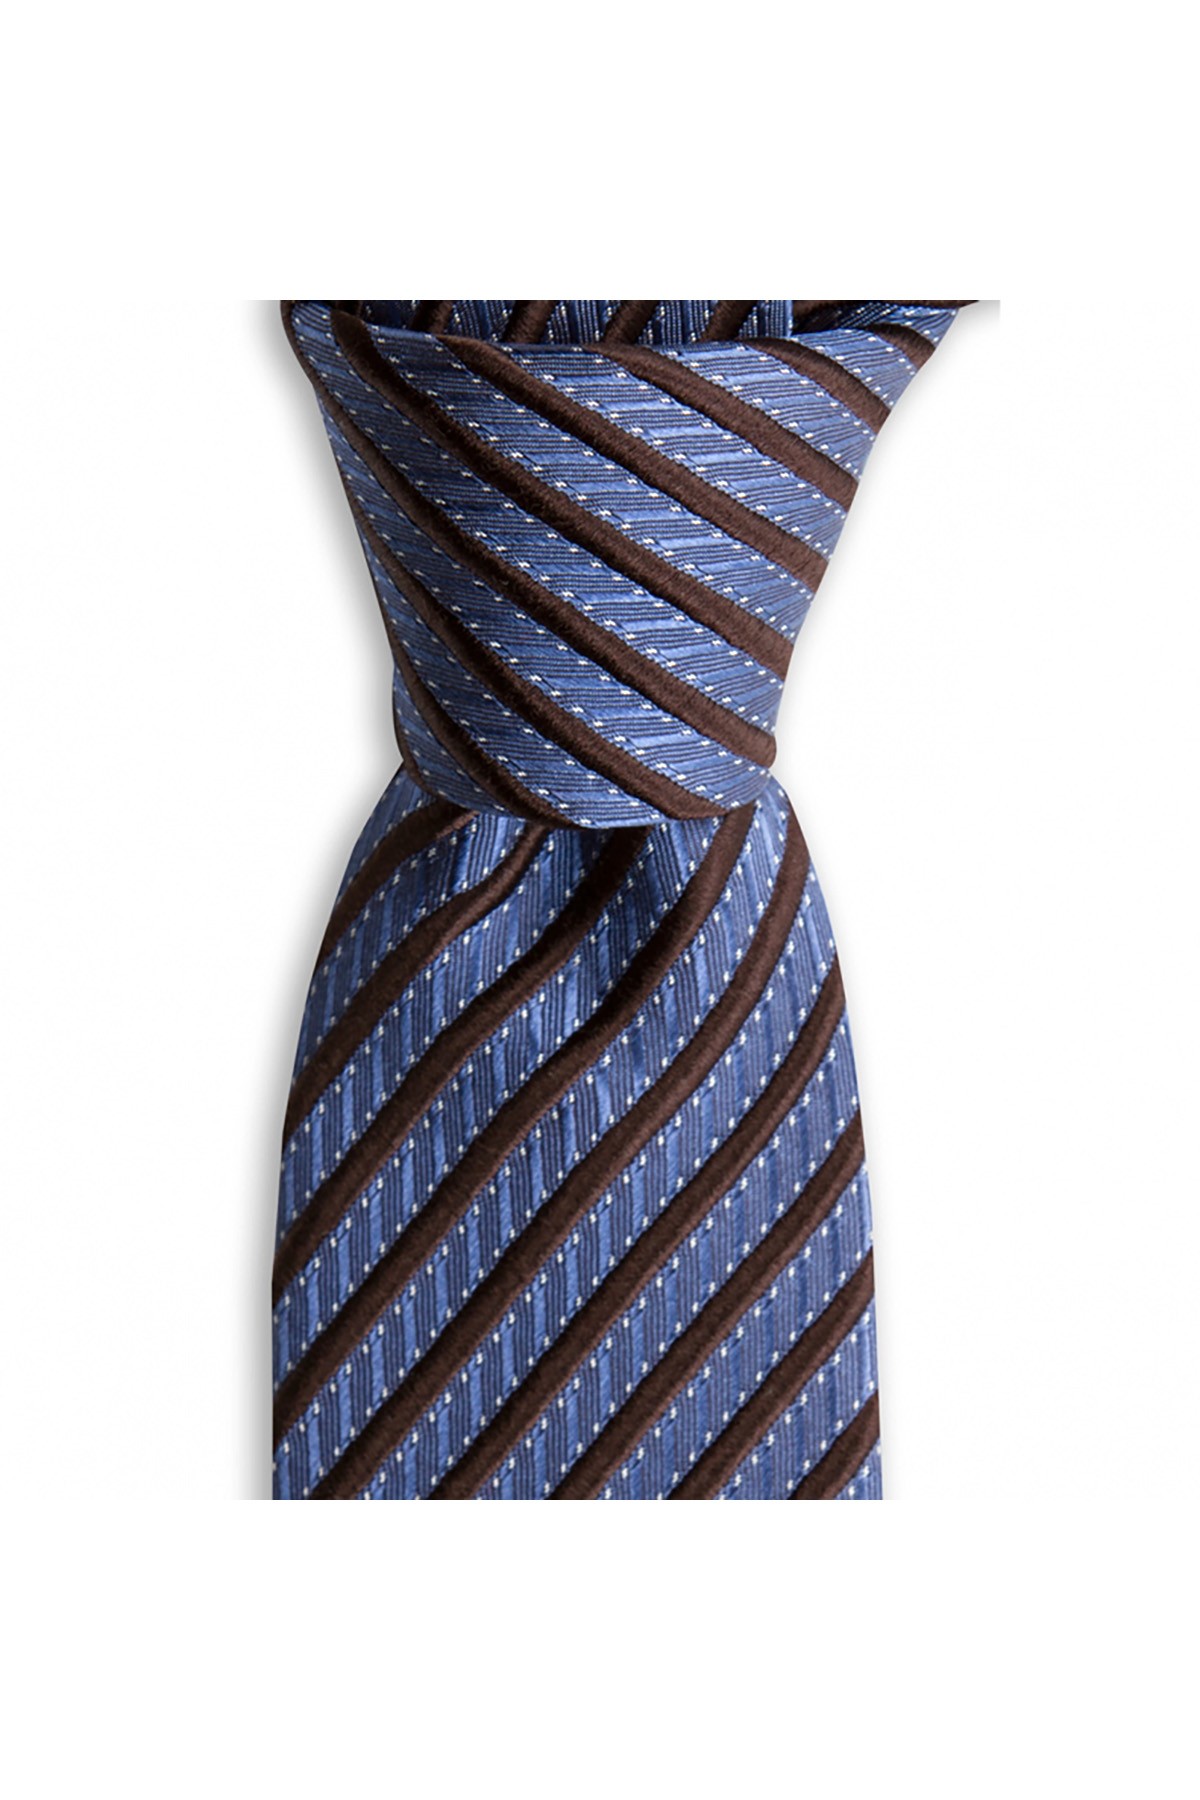 İnce çizgili 7,5 cm genişliğinde klasik ipek kravat